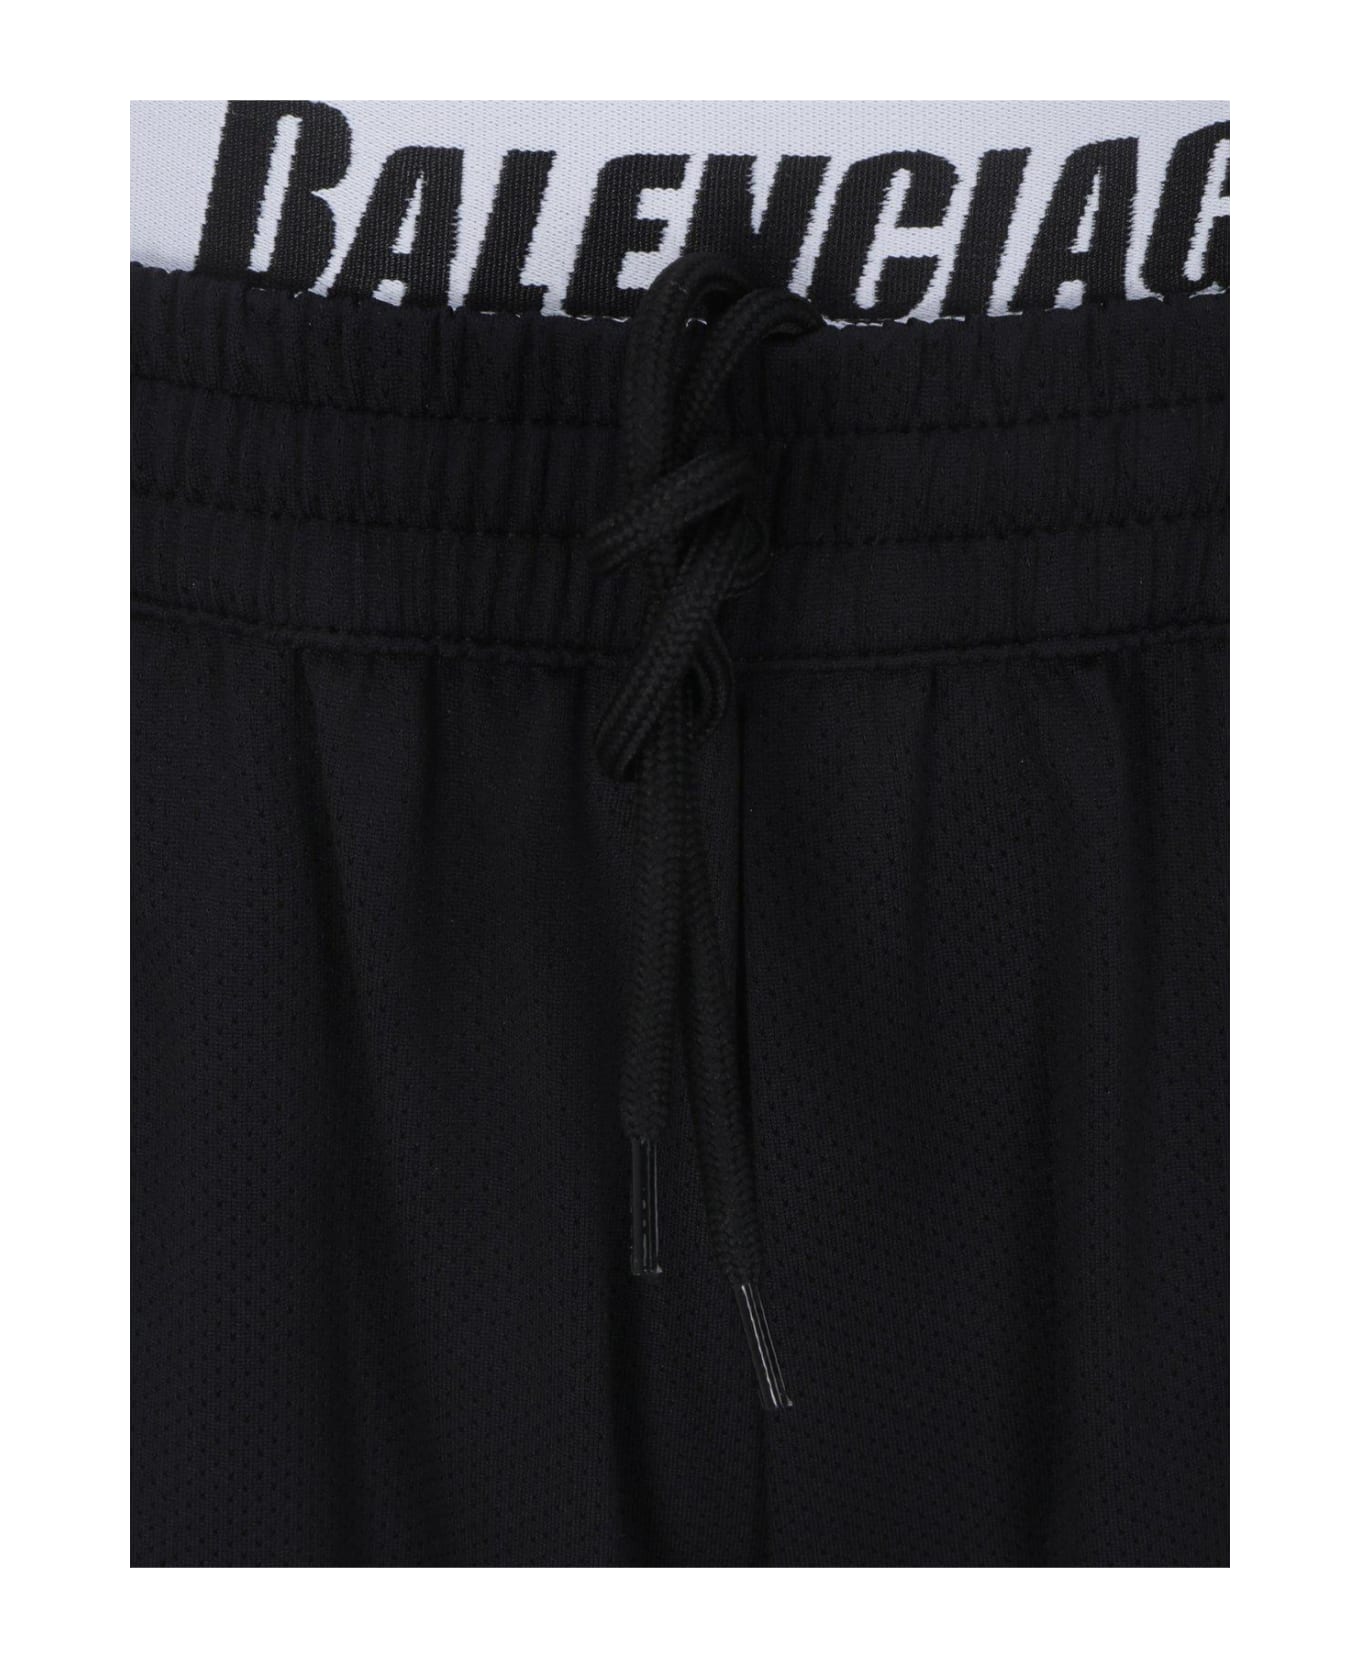 Balenciaga Drawstring Swim Shorts - Black